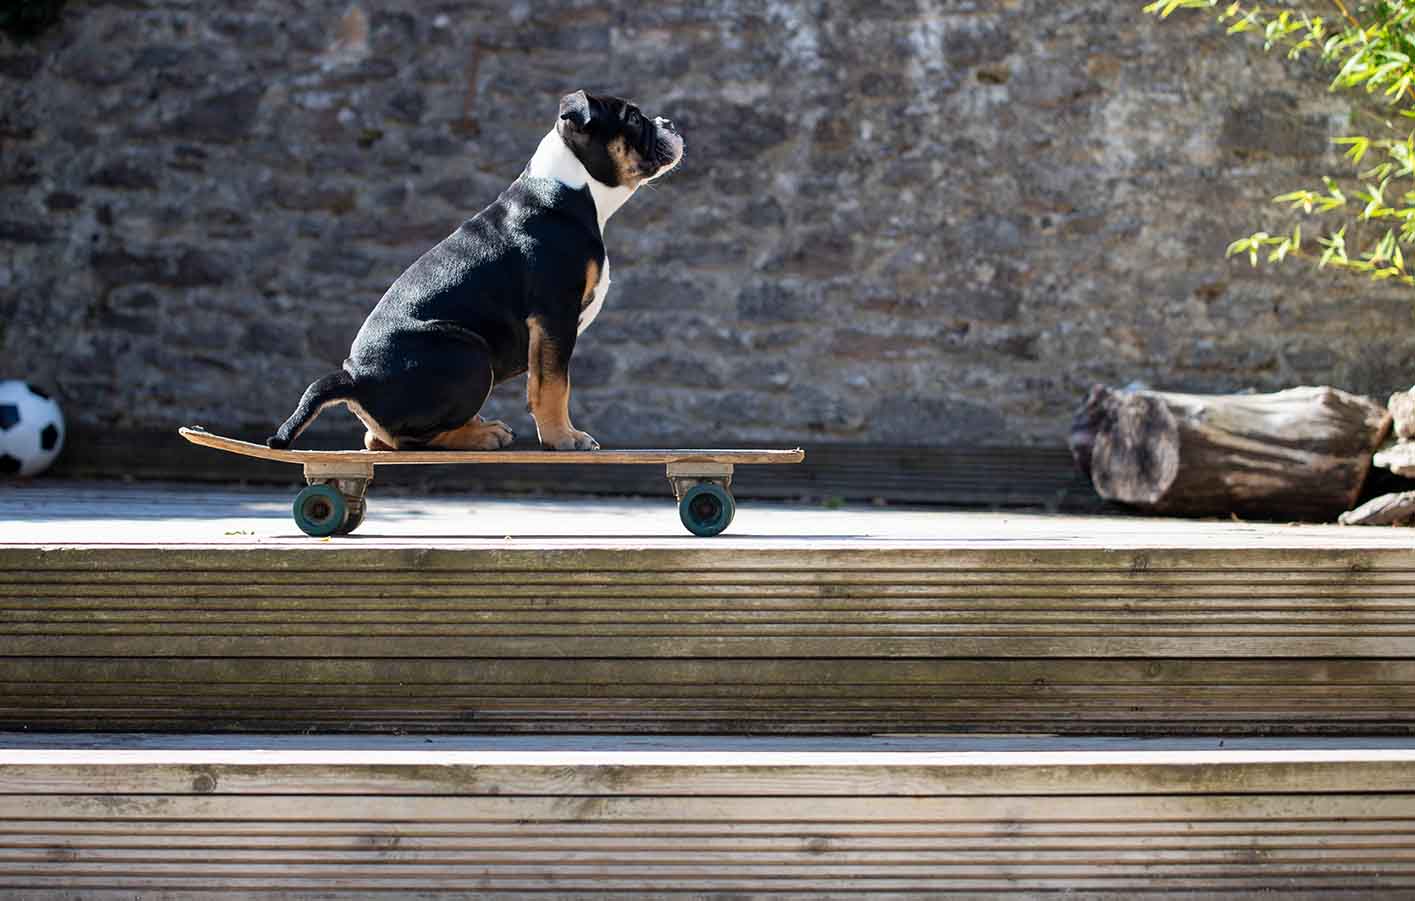 Verwiterrte Holzterrasse mit einem Hund der auf einem Skateboard sitzt